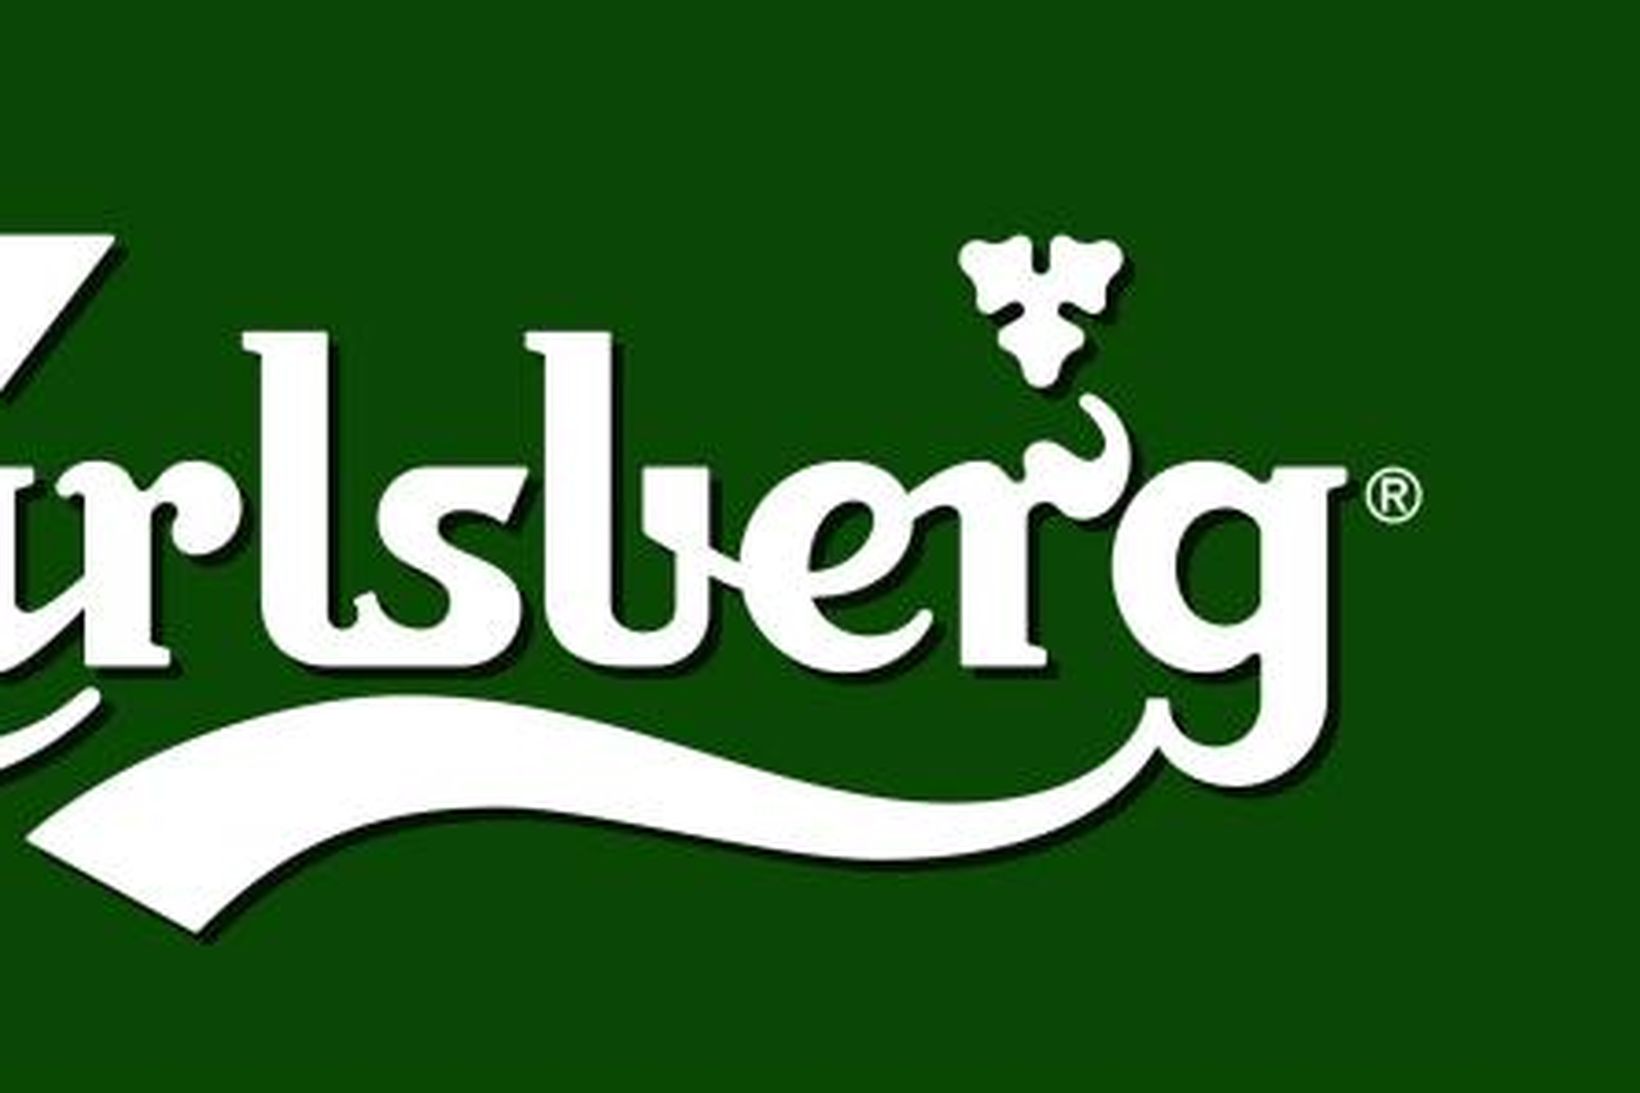 Carlsberg.